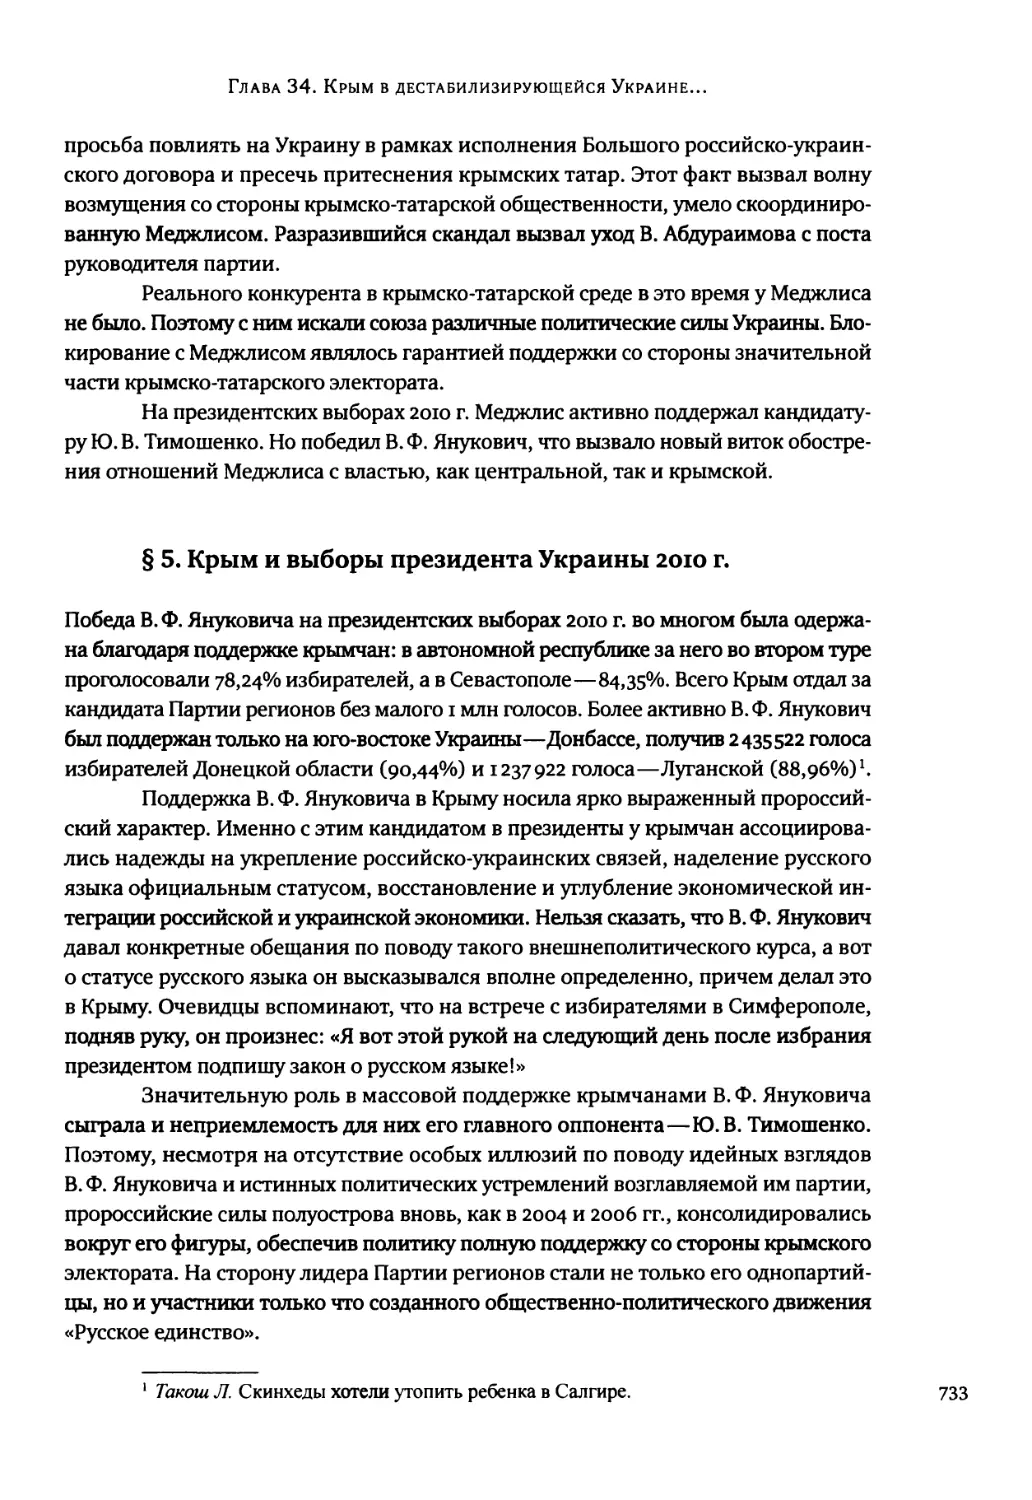 § 5. Крым и выборы президента Украины 2010 г